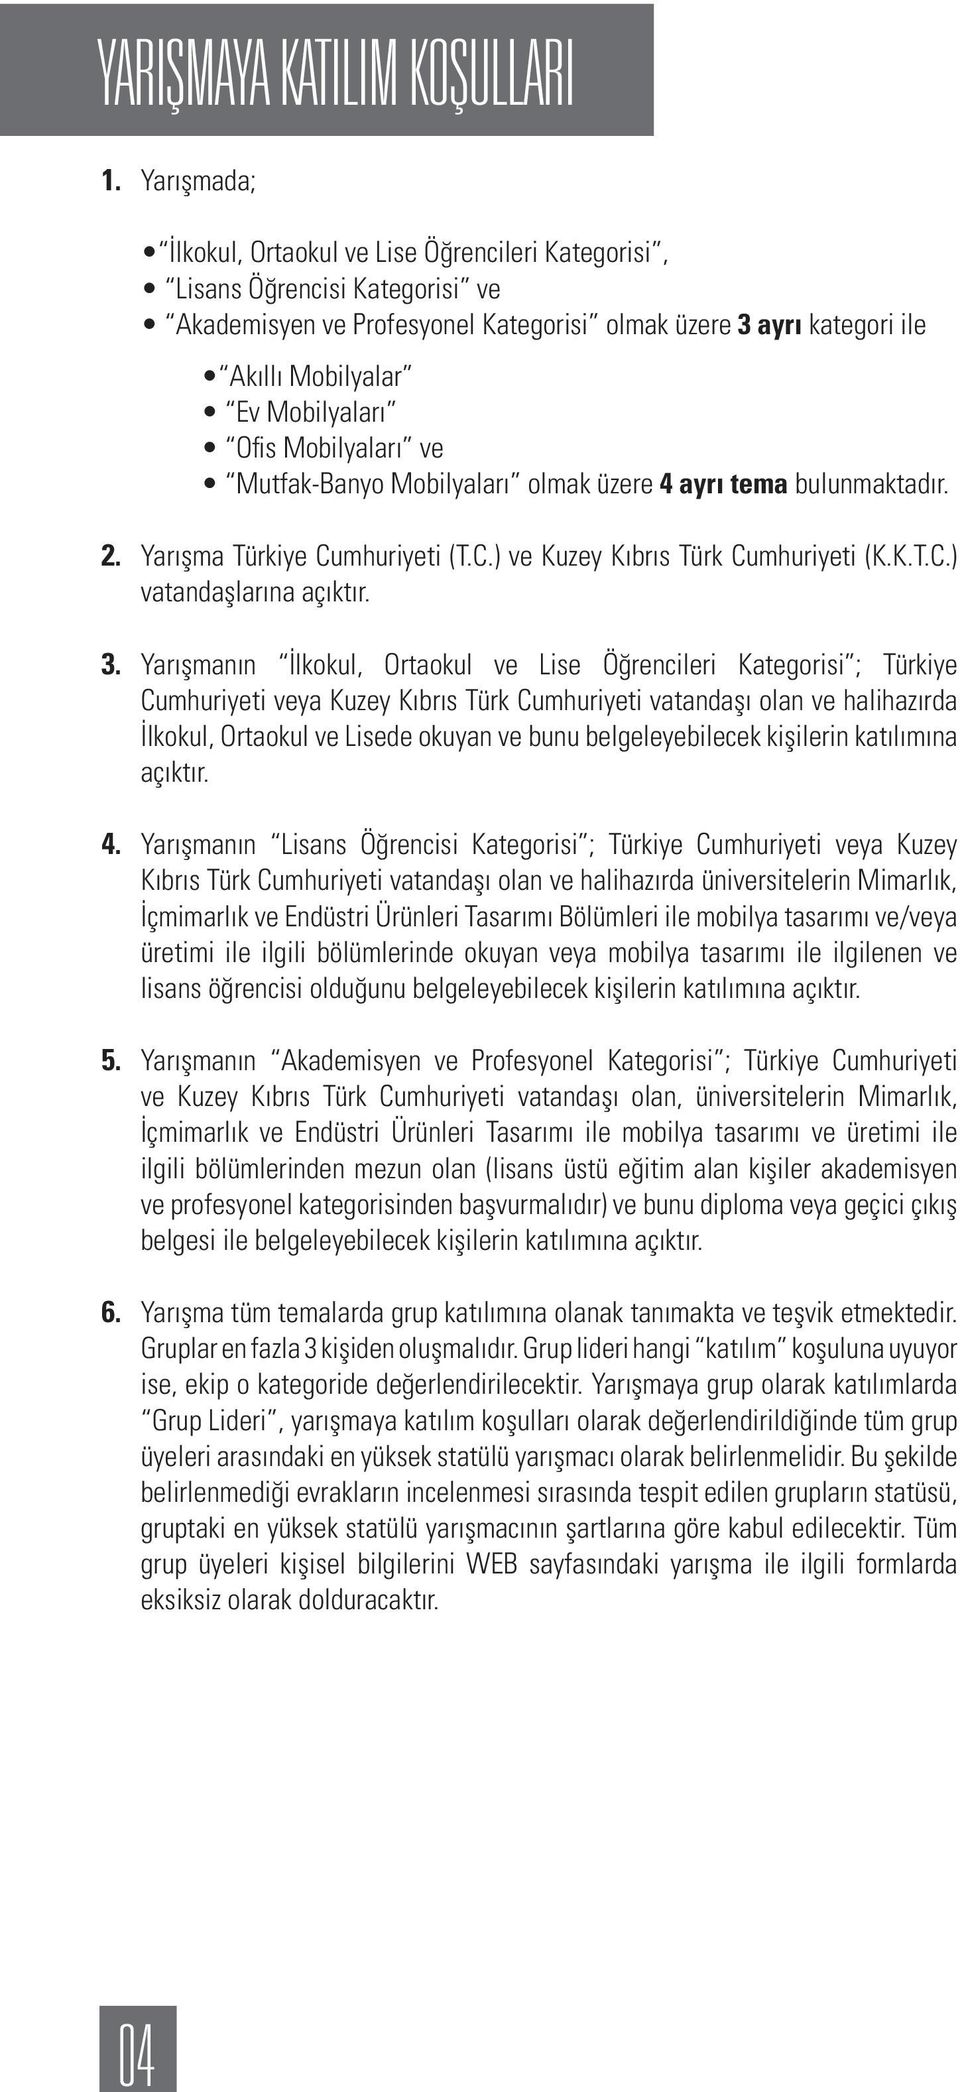 Mobilyaları ve Mutfak-Banyo Mobilyaları olmak üzere 4 ayrı tema bulunmaktadır. 2. Yarışma Türkiye Cumhuriyeti (T.C.) ve Kuzey Kıbrıs Türk Cumhuriyeti (K.K.T.C.) vatandaşlarına açıktır. 3.